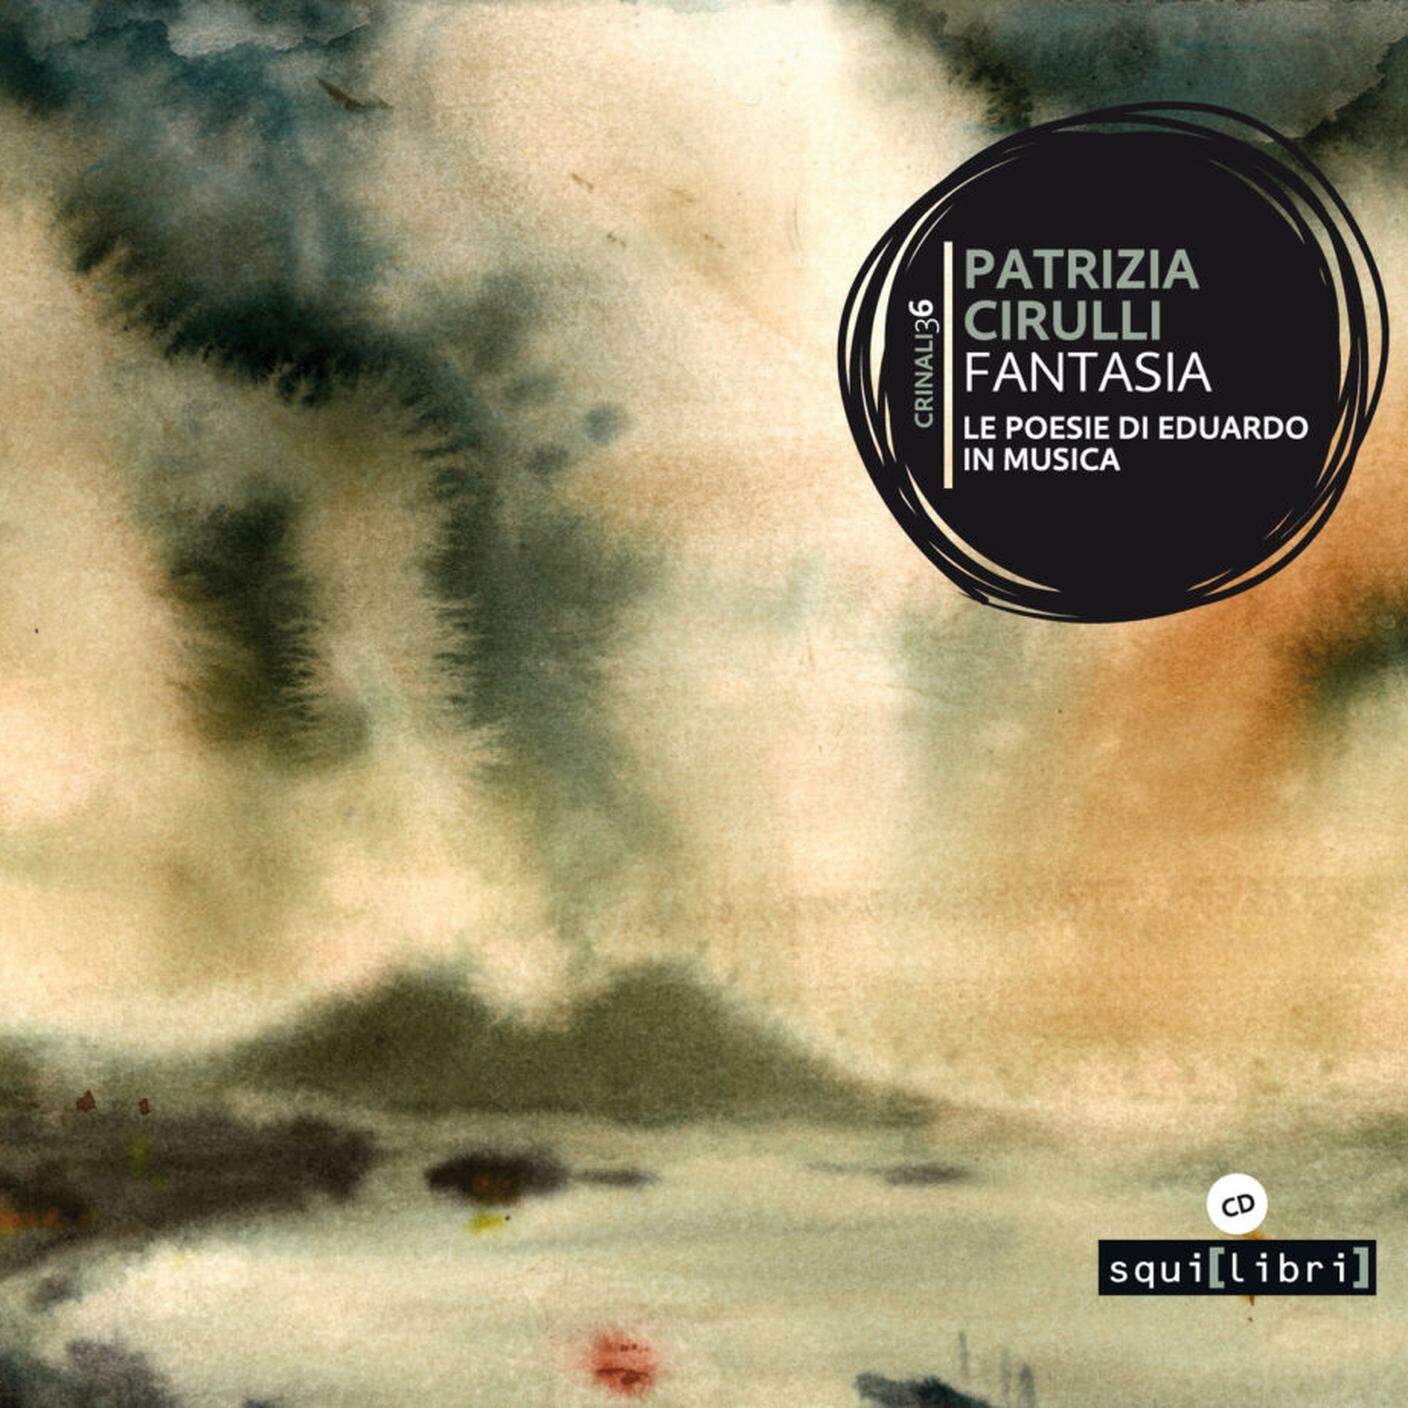 "Fantasia. Le poesie di Eduardo in musica" di Patrizia Cirulli, Crinali - Squilibri (dettaglio di copertina)